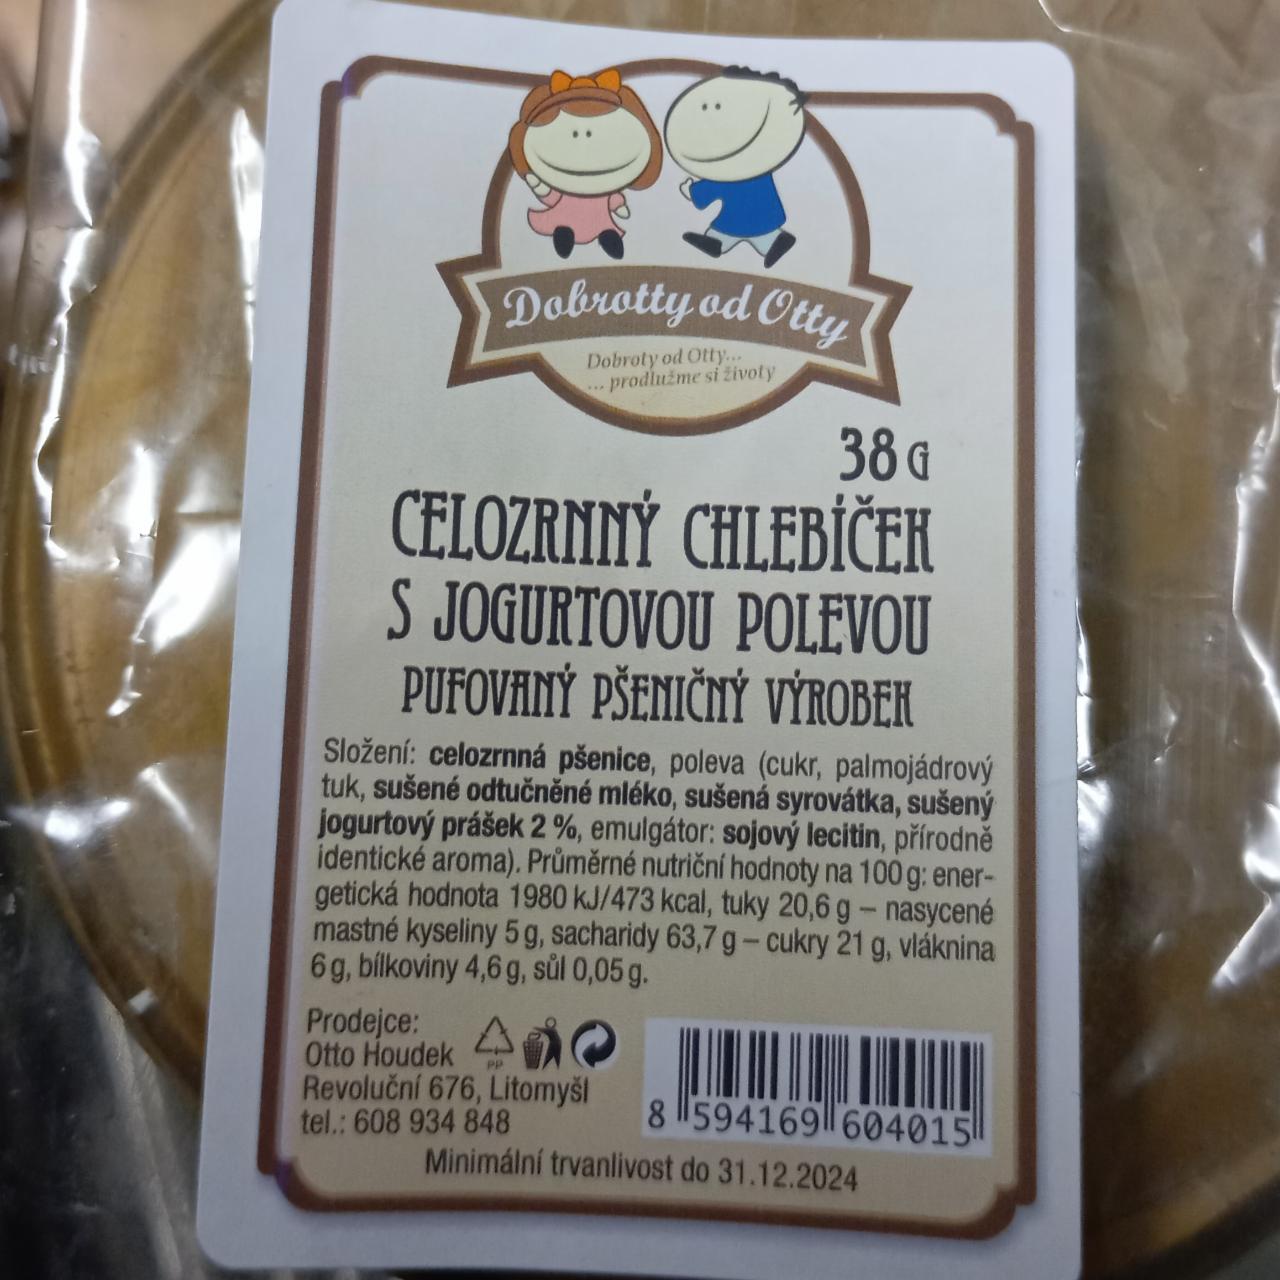 Fotografie - Celozrnný chlebíček s jogurtovou polevou Dobrotty od Otty